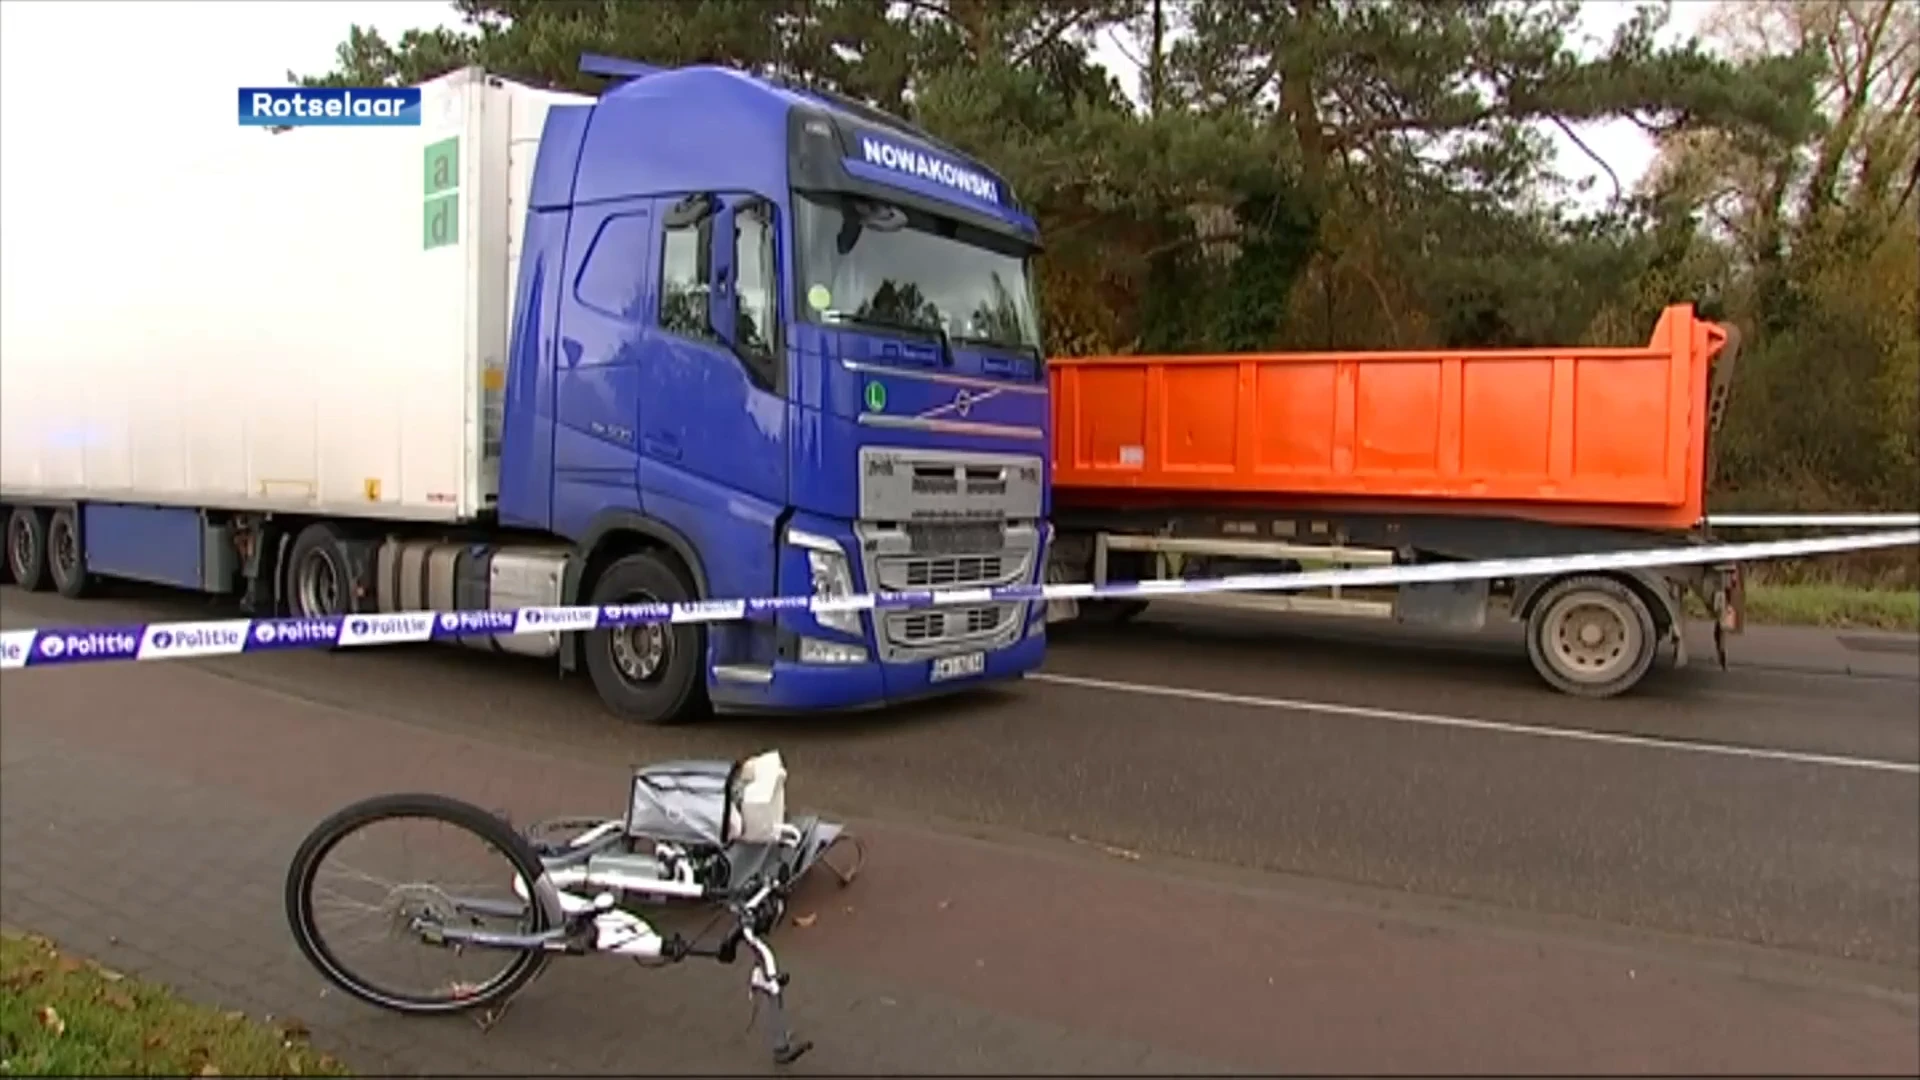 Rijverbod voor vrachtwagenchauffeur die fietser doodreed aan rotonde in Rotselaar, burgemeester: "Start werken loopt vertraging op door juridische procedures"